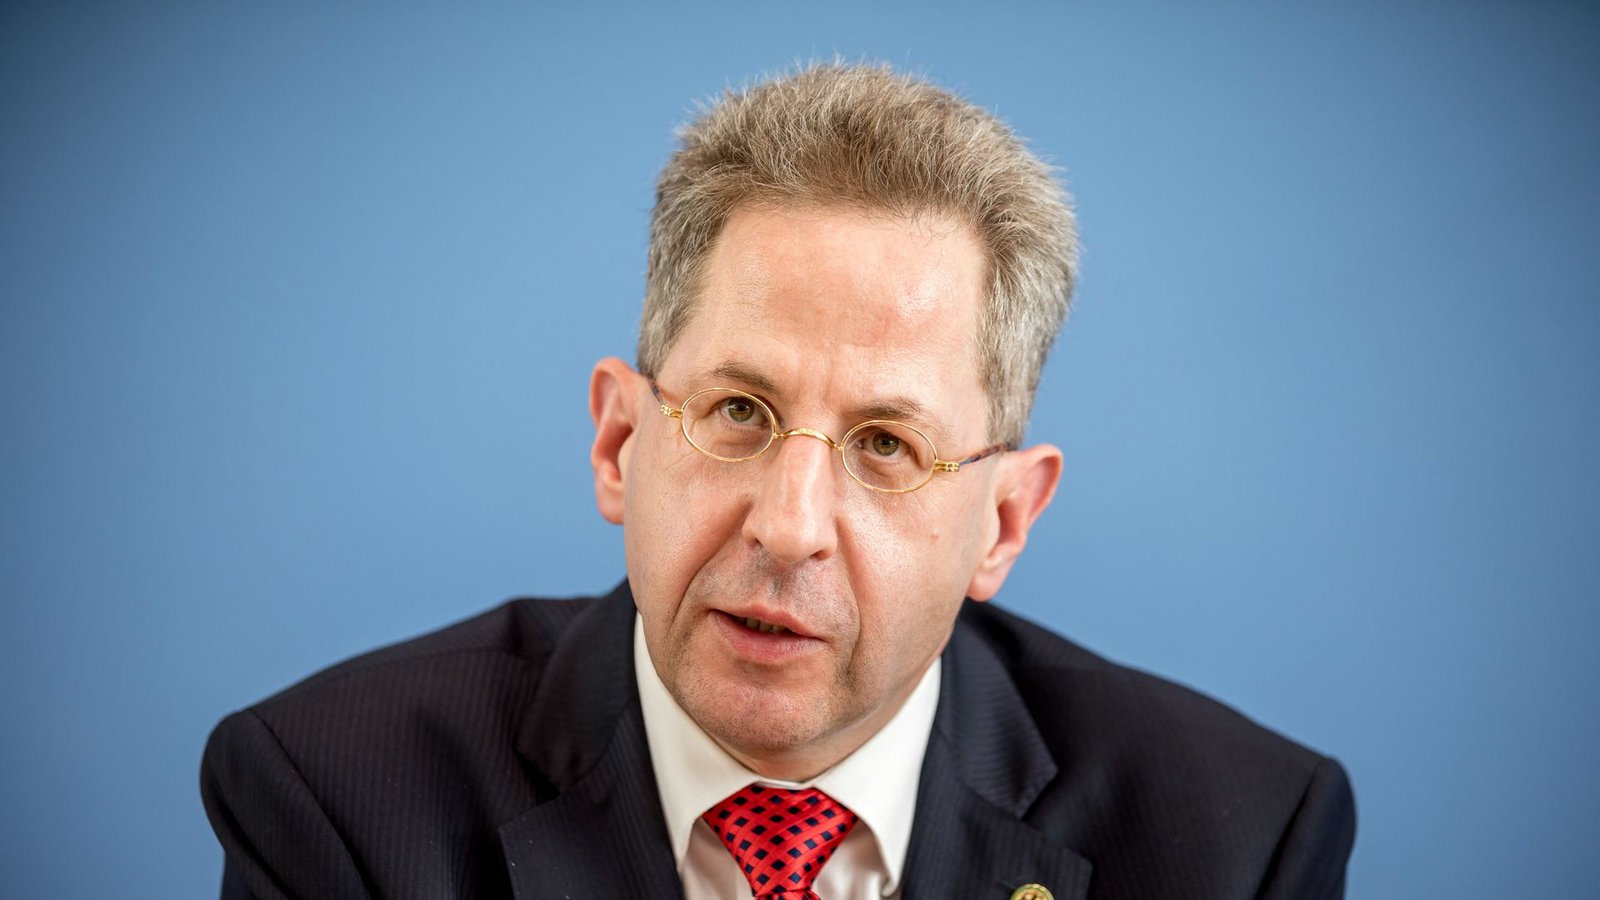 Hans-Georg Maaßen ist seit dem Wochenende Vorsitzender der Werteunion.Foto: dpa/Michael Kappeler